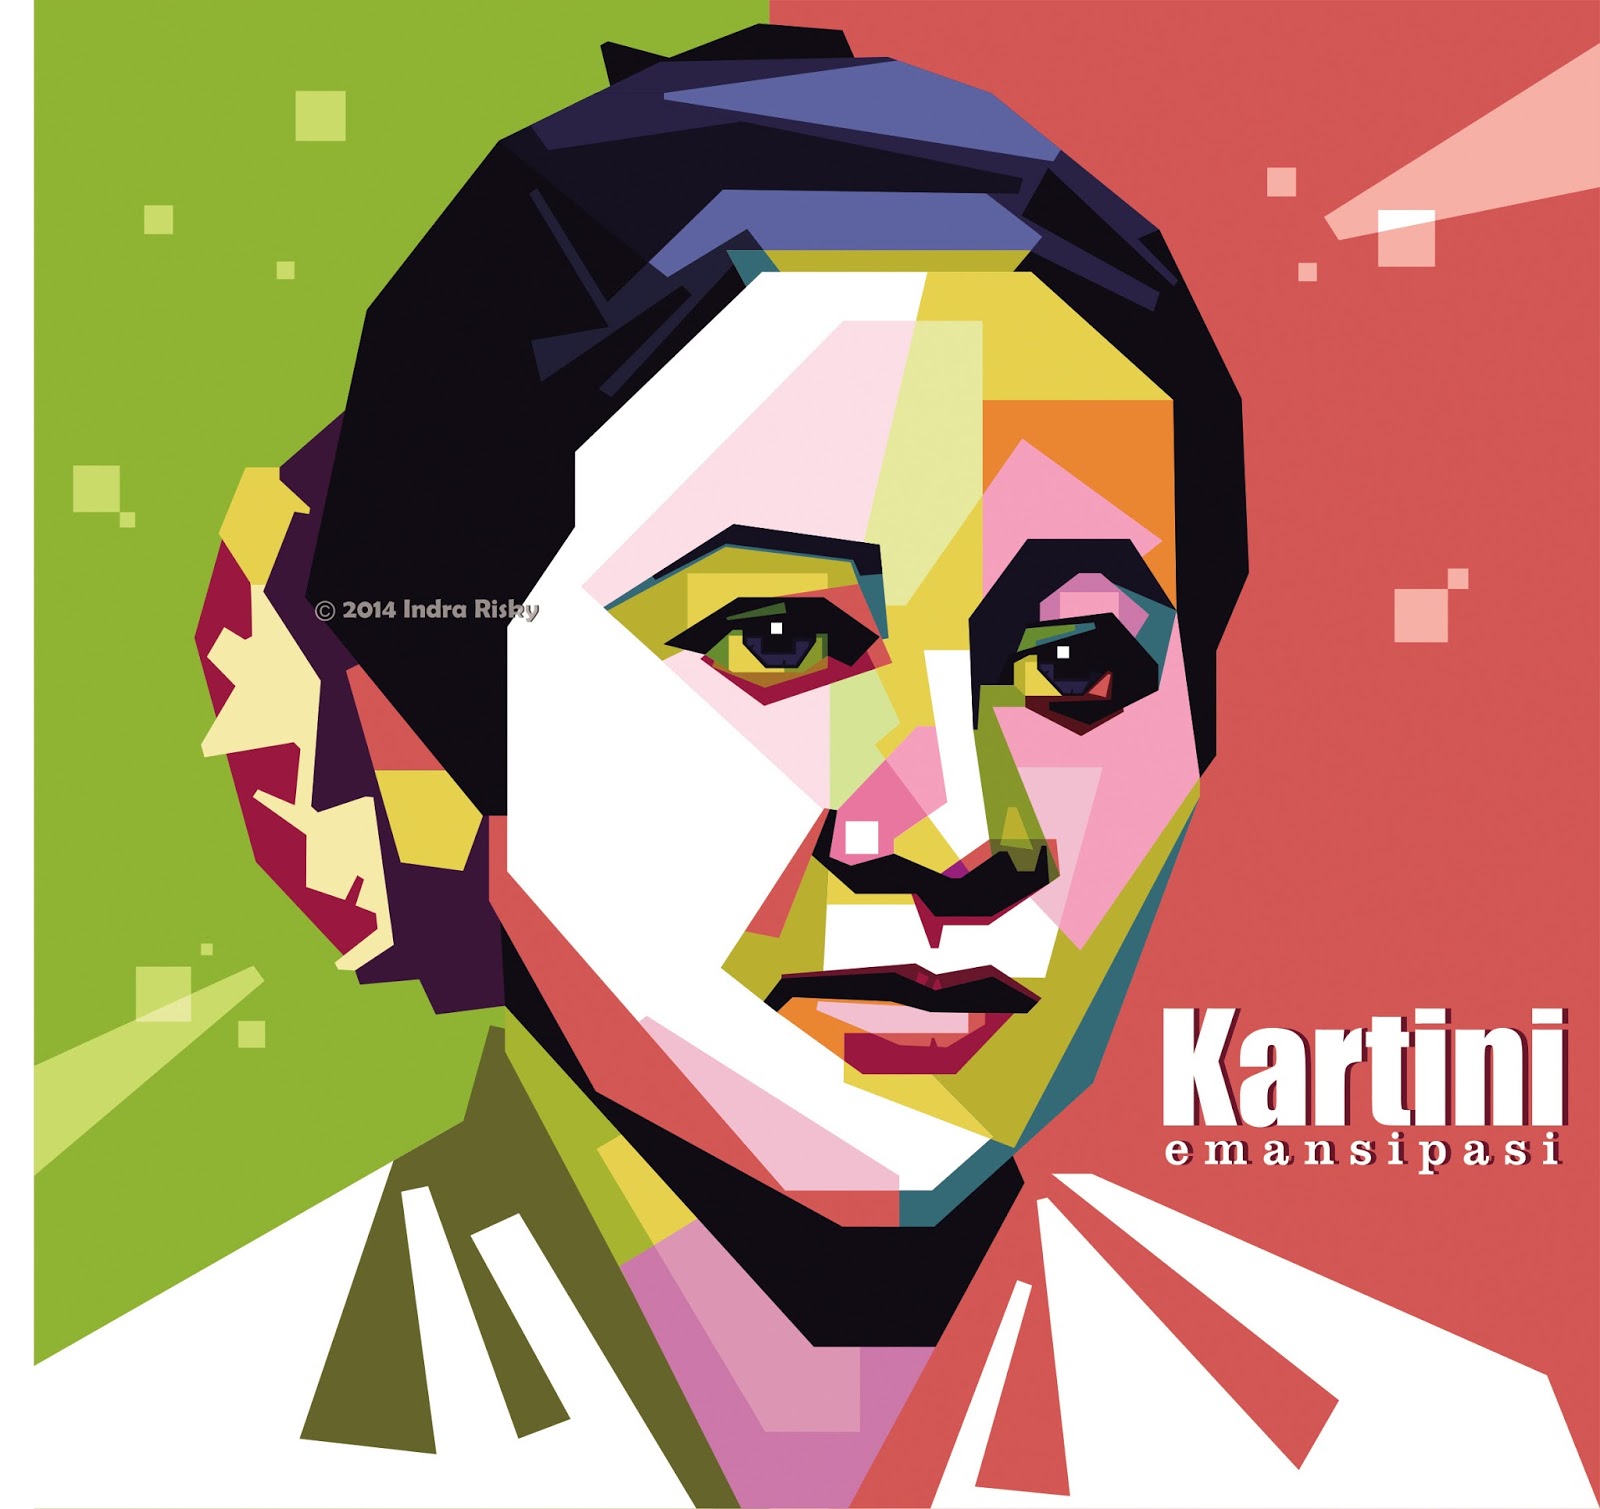 JapanAnime: Kartini day 2015